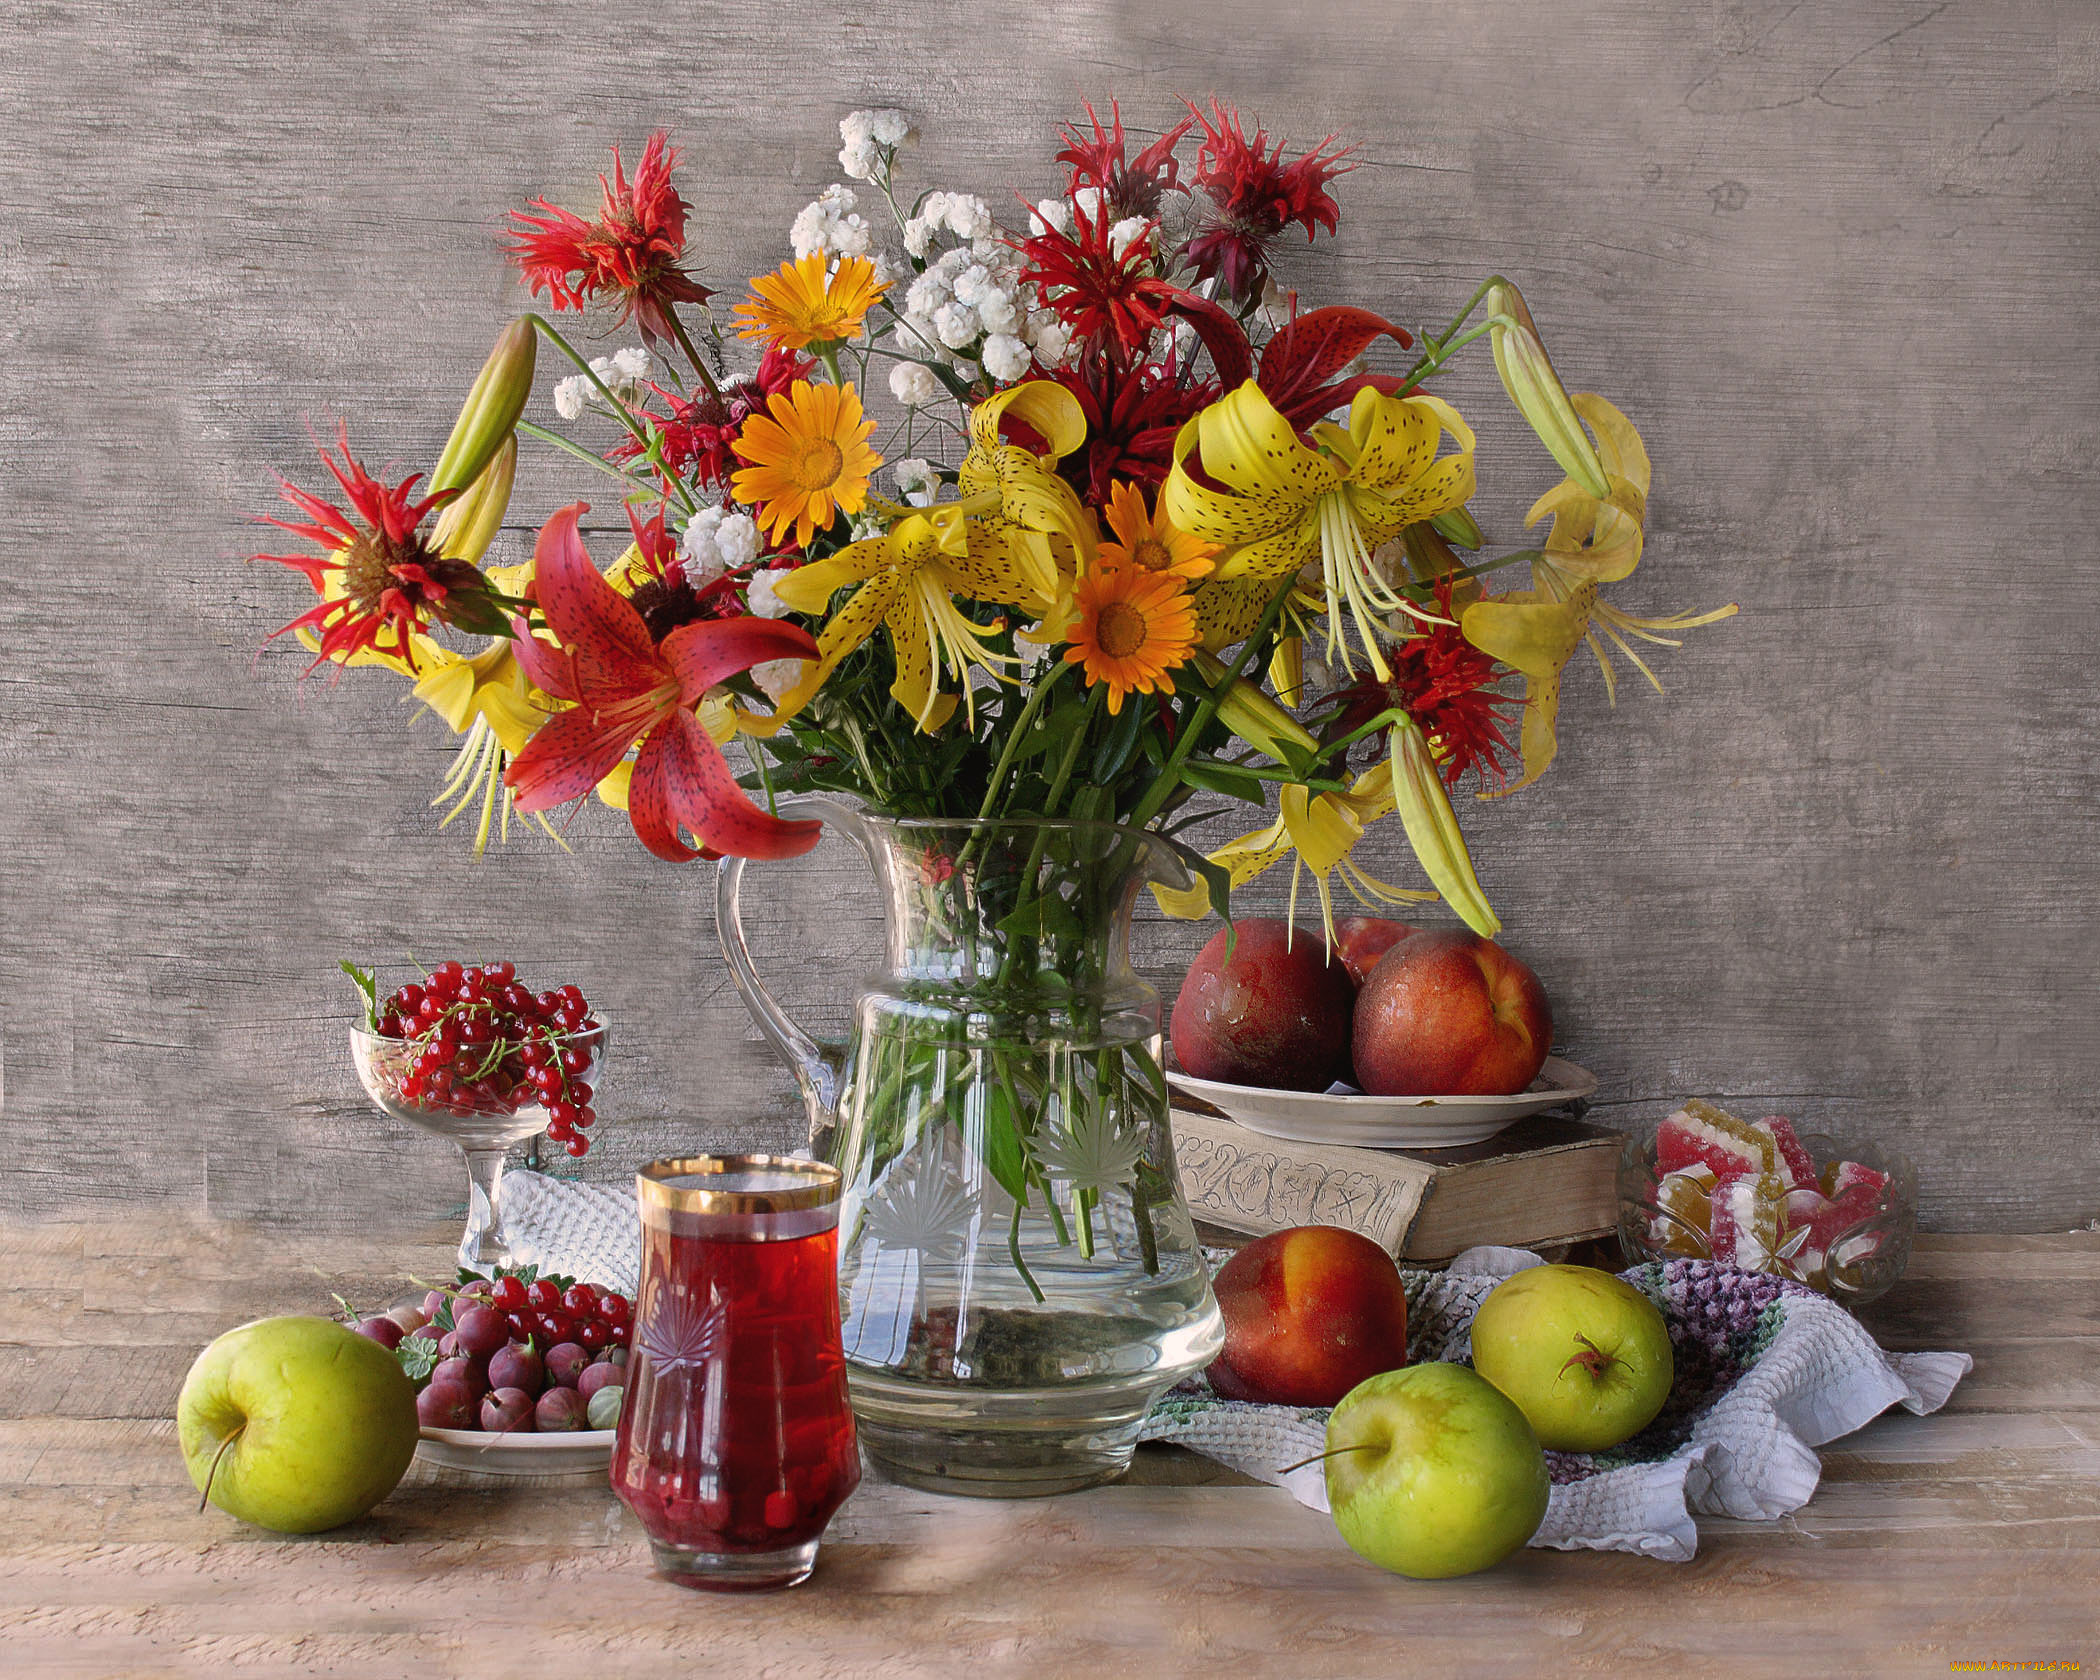 еда, натюрморт, ягоды, фрукты, яблоки, летний, персики, композиция, мармелад, красная, смородина, цветы, крыжовник